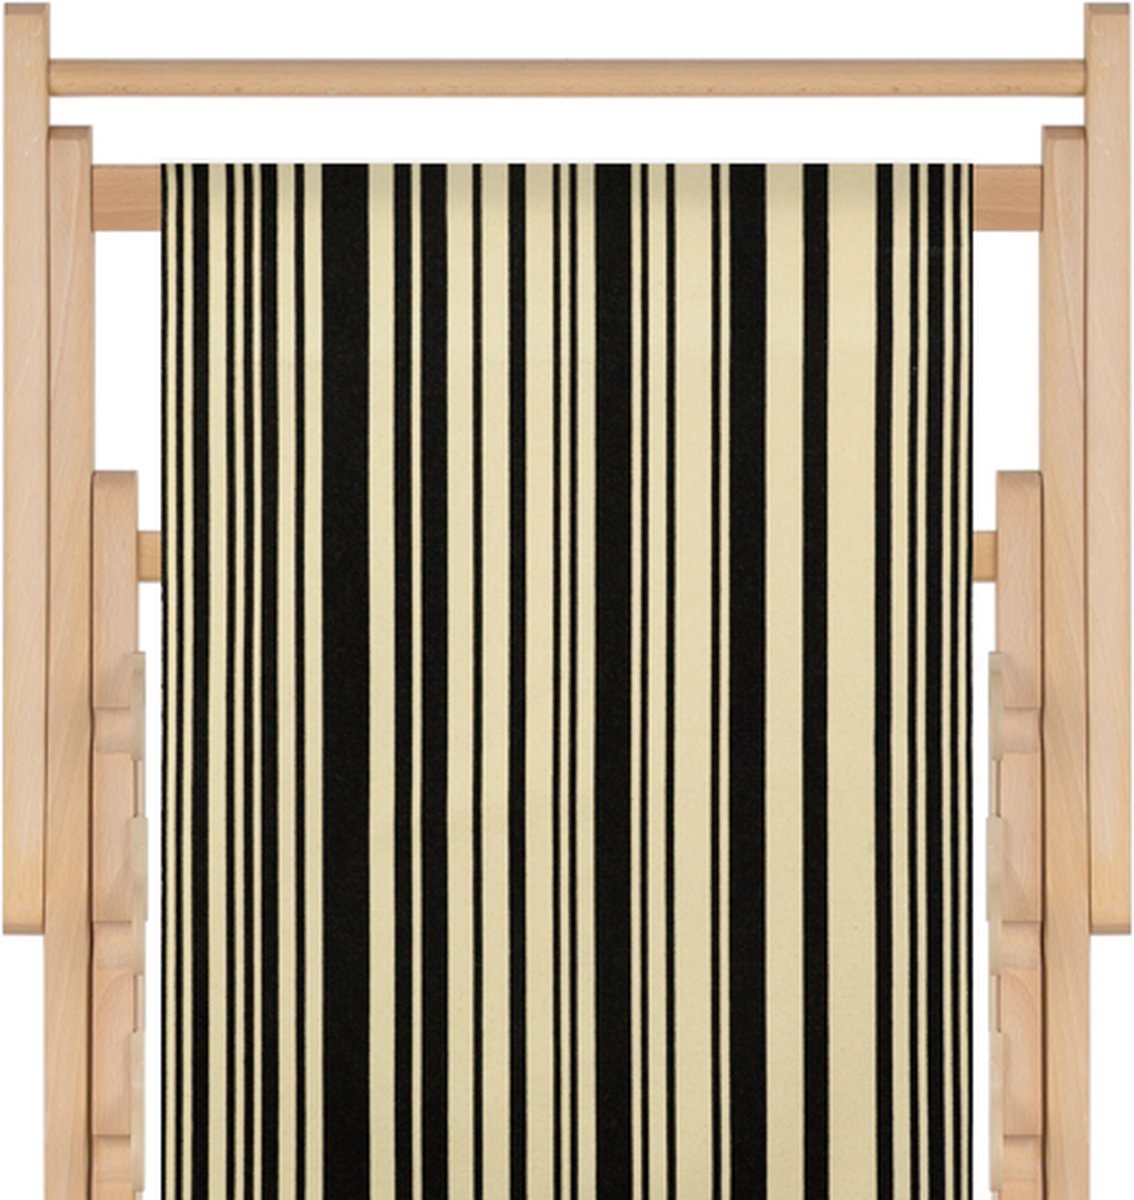 Houten strandstoel met hoogwaardige stof in katoen - massief beukehout - dubbelgeweven katoen Tom zwart - opvouwbaar - verstelbaar in 3 standen - zonder armleuning - afneembare hoes